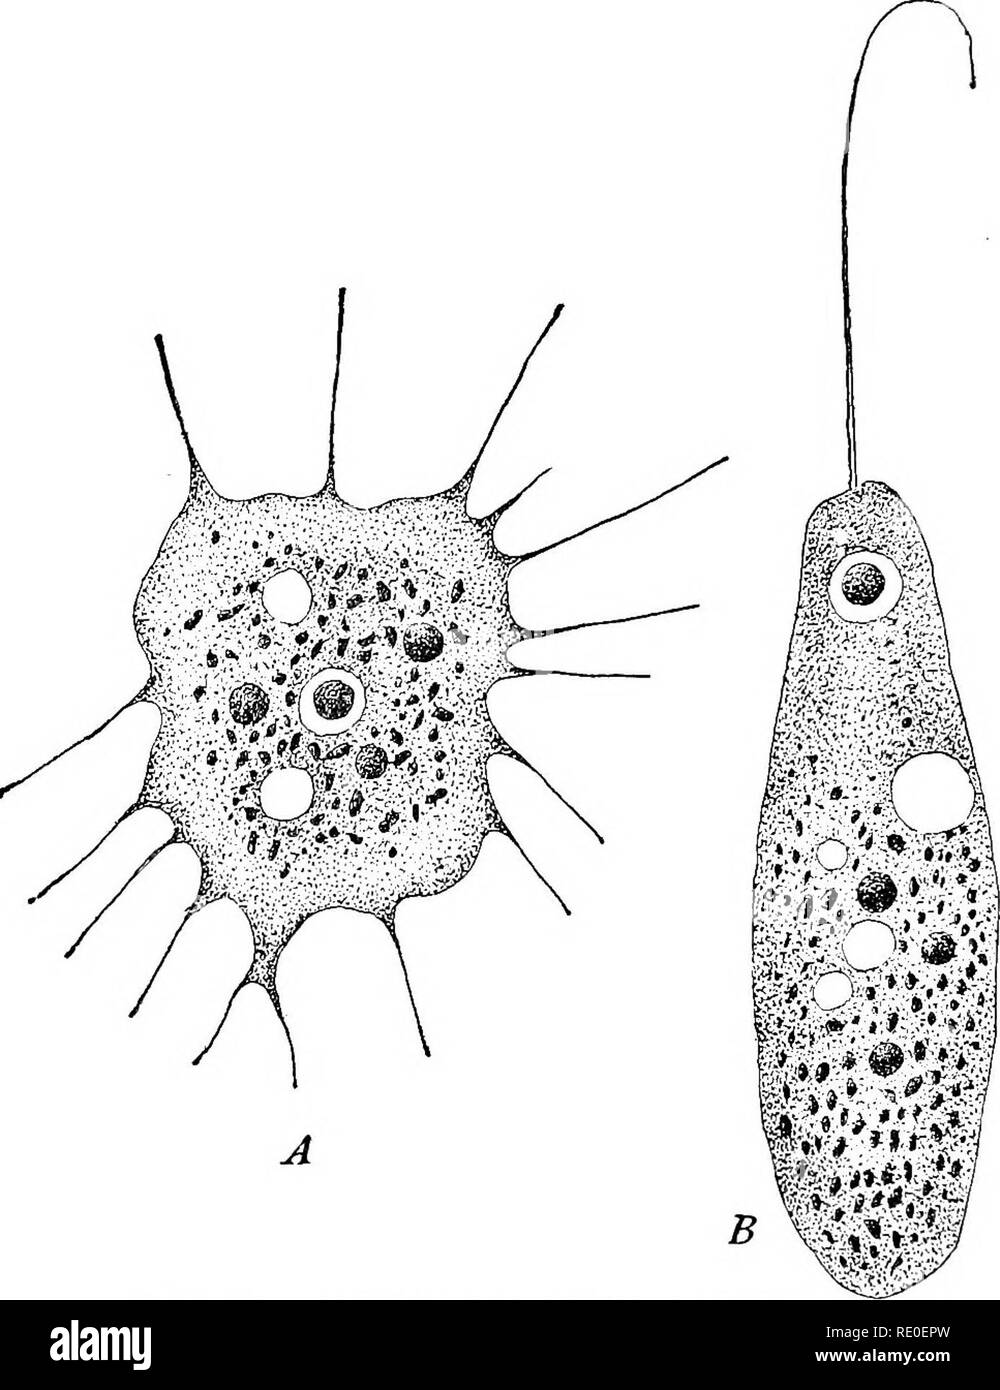 . Die protozoen. Protozoen. 100 Die PROTOZOEN Rhizopoda, und zu dieser Kraft der Veränderung kann durch die Tatsache, dass weniger Arten von Flagellidia als der Rhizopoda bekannt sind. 1. Die Entwicklung eines Nicken oder einer rhizopod wirft etwas Licht auf die Frage, sowohl für flagellaten mit amoeboid Schwarm - Sporen und rhizopods mit Flagellated Schwarm - Sporen, sind bekannt. Die sehr enge Beziehung der beiden Gruppen wird auch durch die Tatsache gezeigt, die von. Abb. 55 - - Dimorpha mutans Gruber. [GRUBER.] A. Amoeboid Phase. B. Flagellated Phase. zahlreiche Beobachter, die sich in der selben Organismus pseudopodia in ändern kann Stockfoto